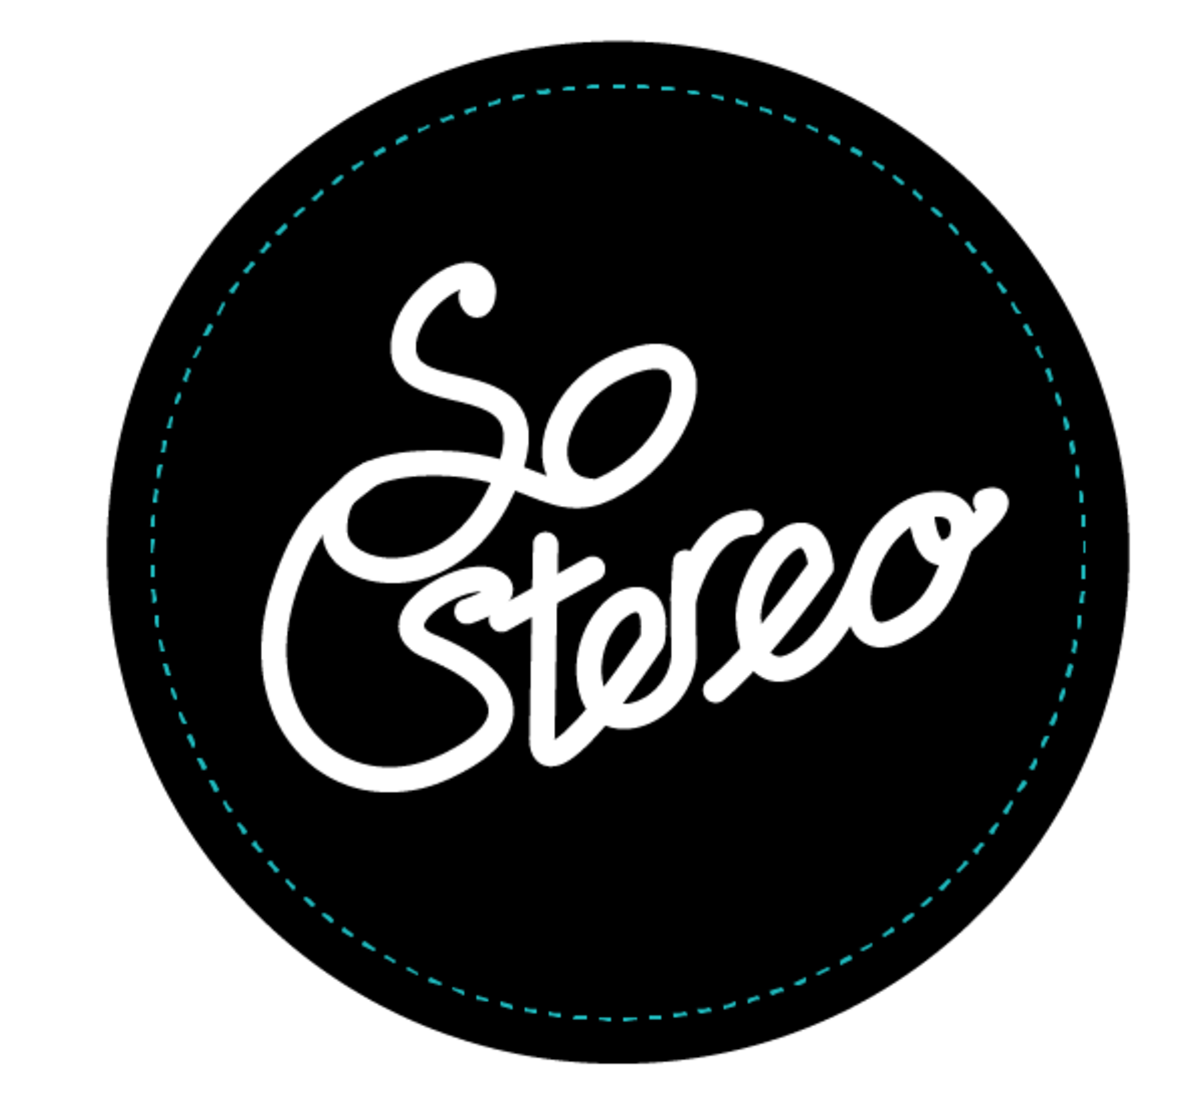 SoStereo Logo